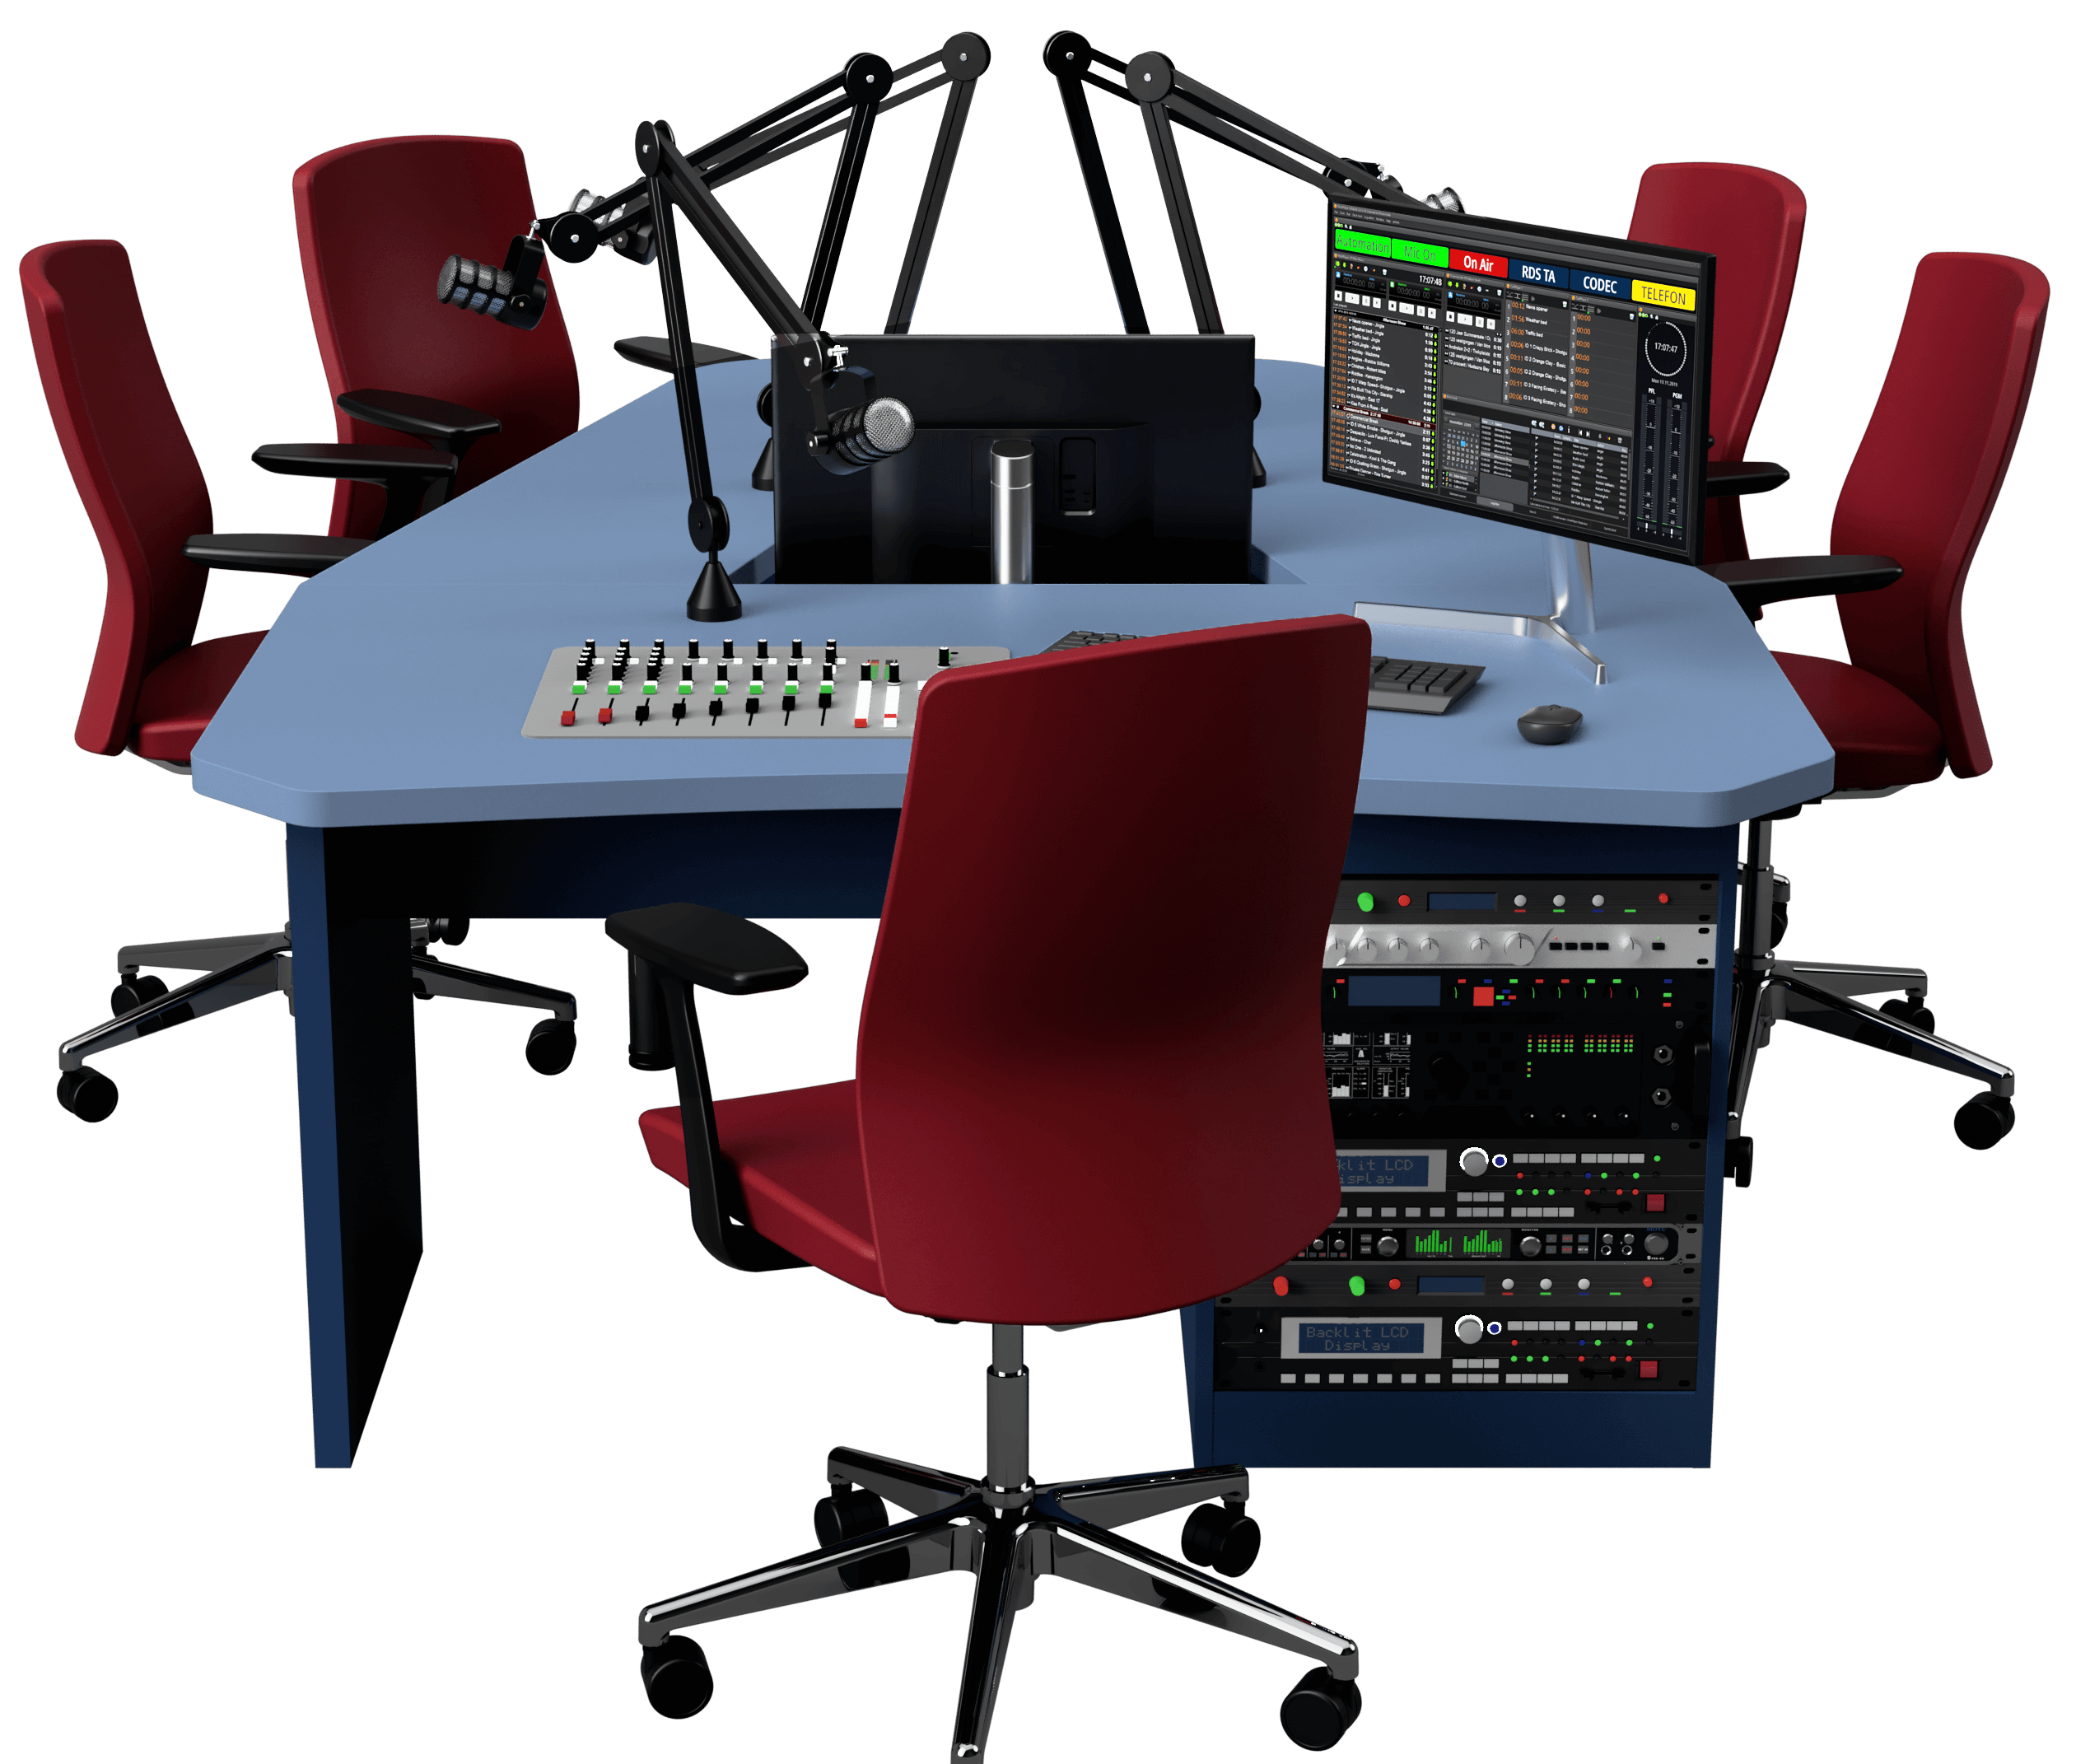 Top Desk L Mobilier Studio Radio – Vidéo – 5 Personnes